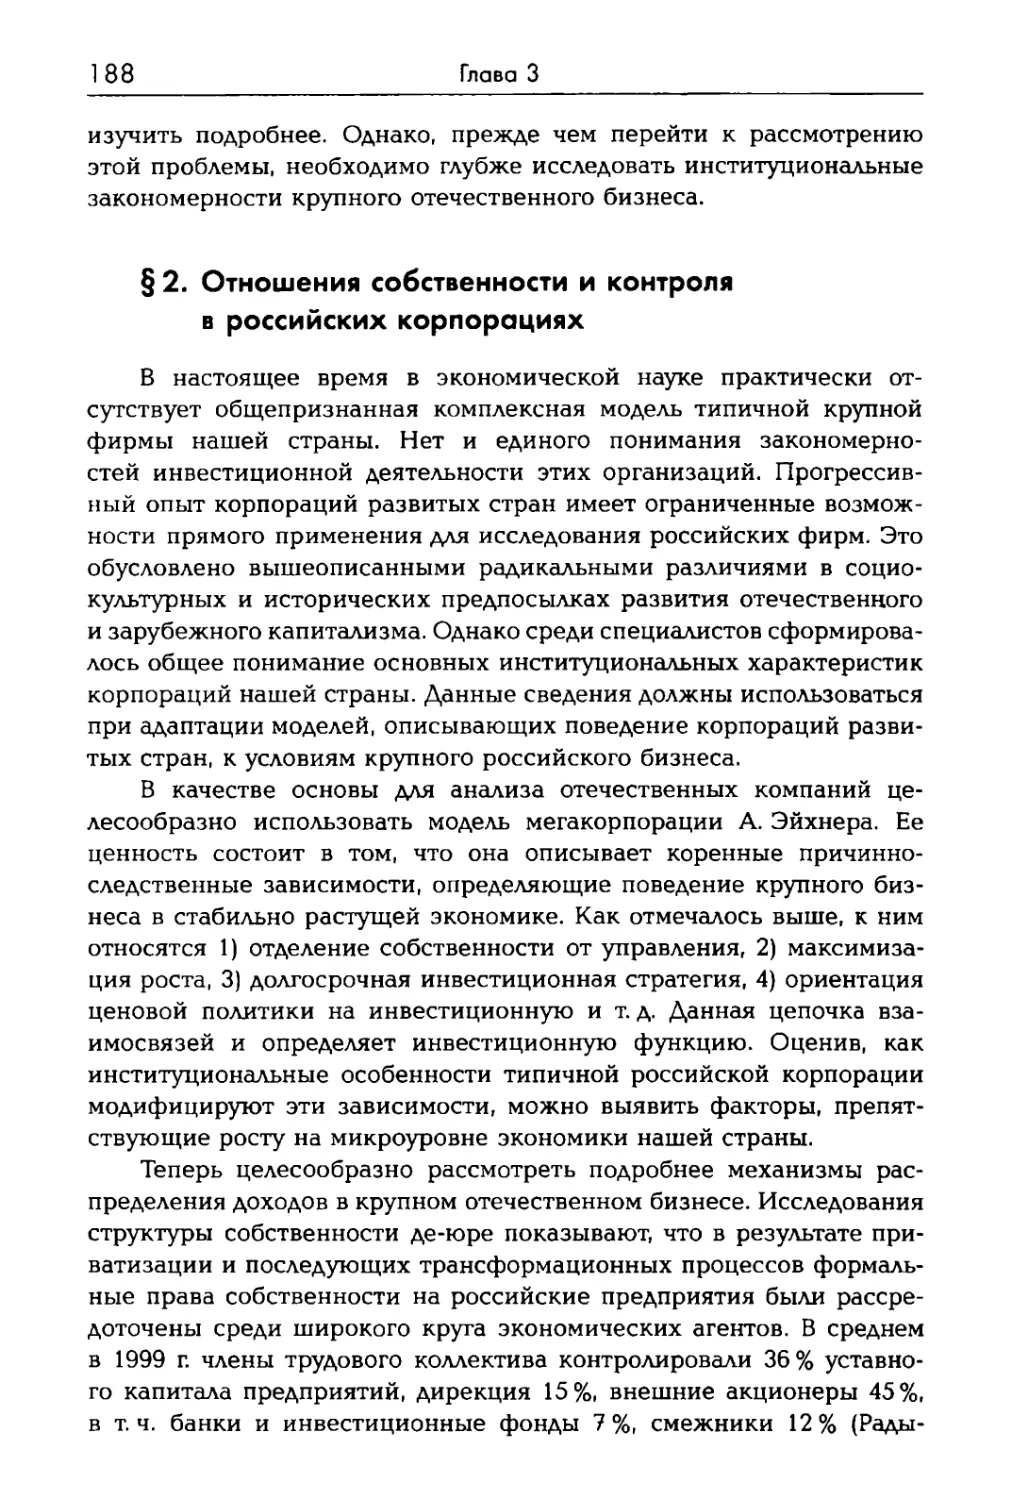 § 2. Отношения собственности и контроля в российских корпорациях